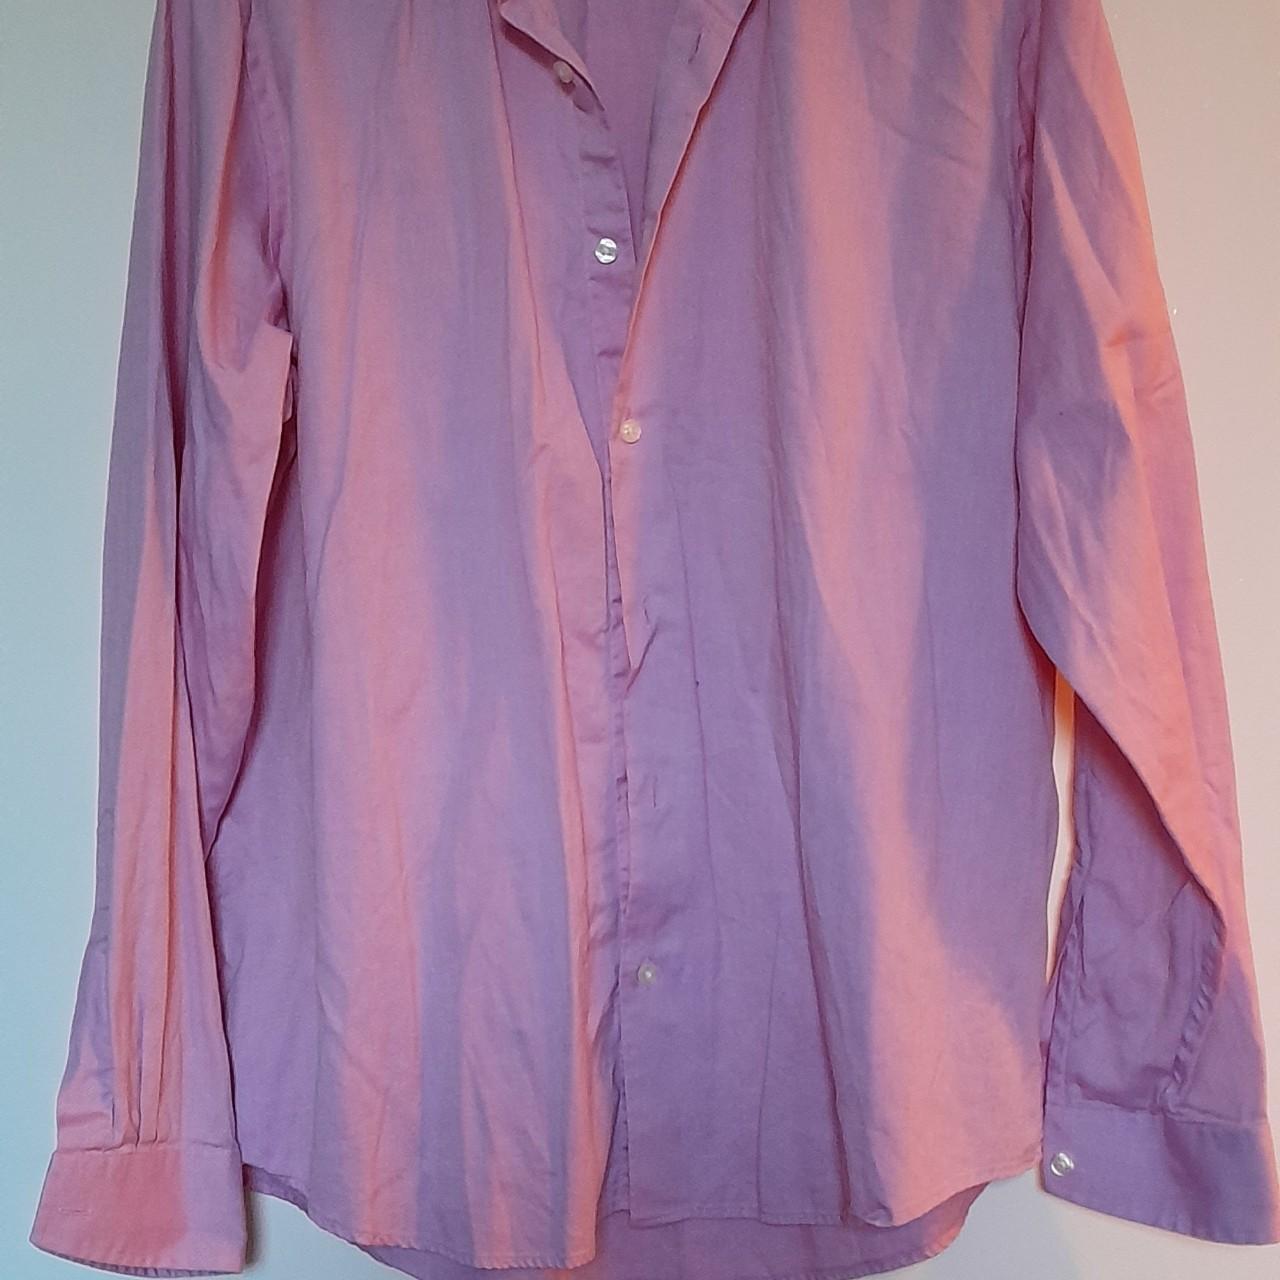 Richard James pure cotton pink shirt. Lovely soft... - Depop